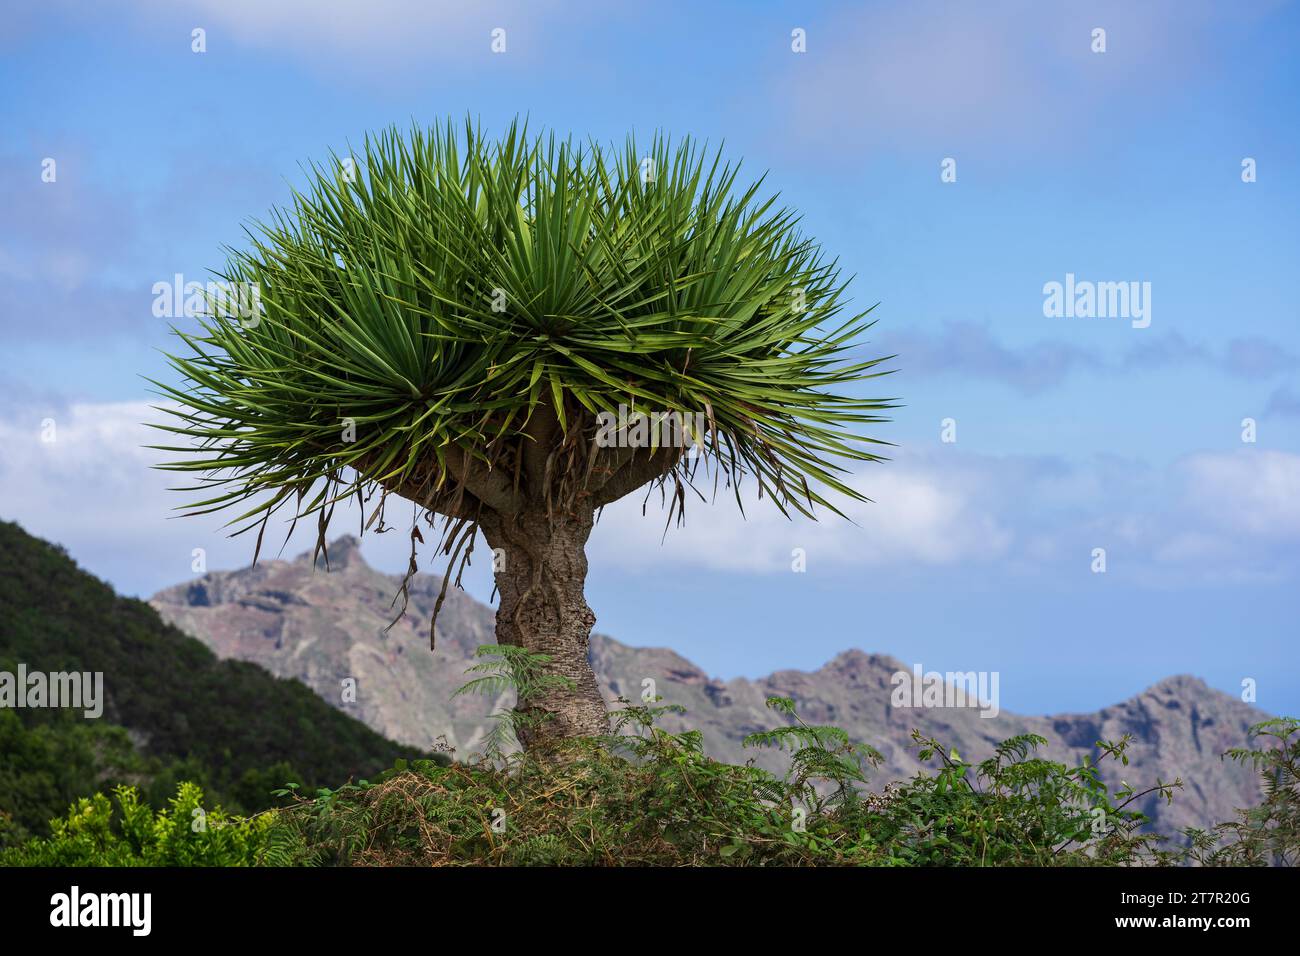 Canary Islands dragon tree (Dracaena draco) against the mountain and sky. Stock Photo